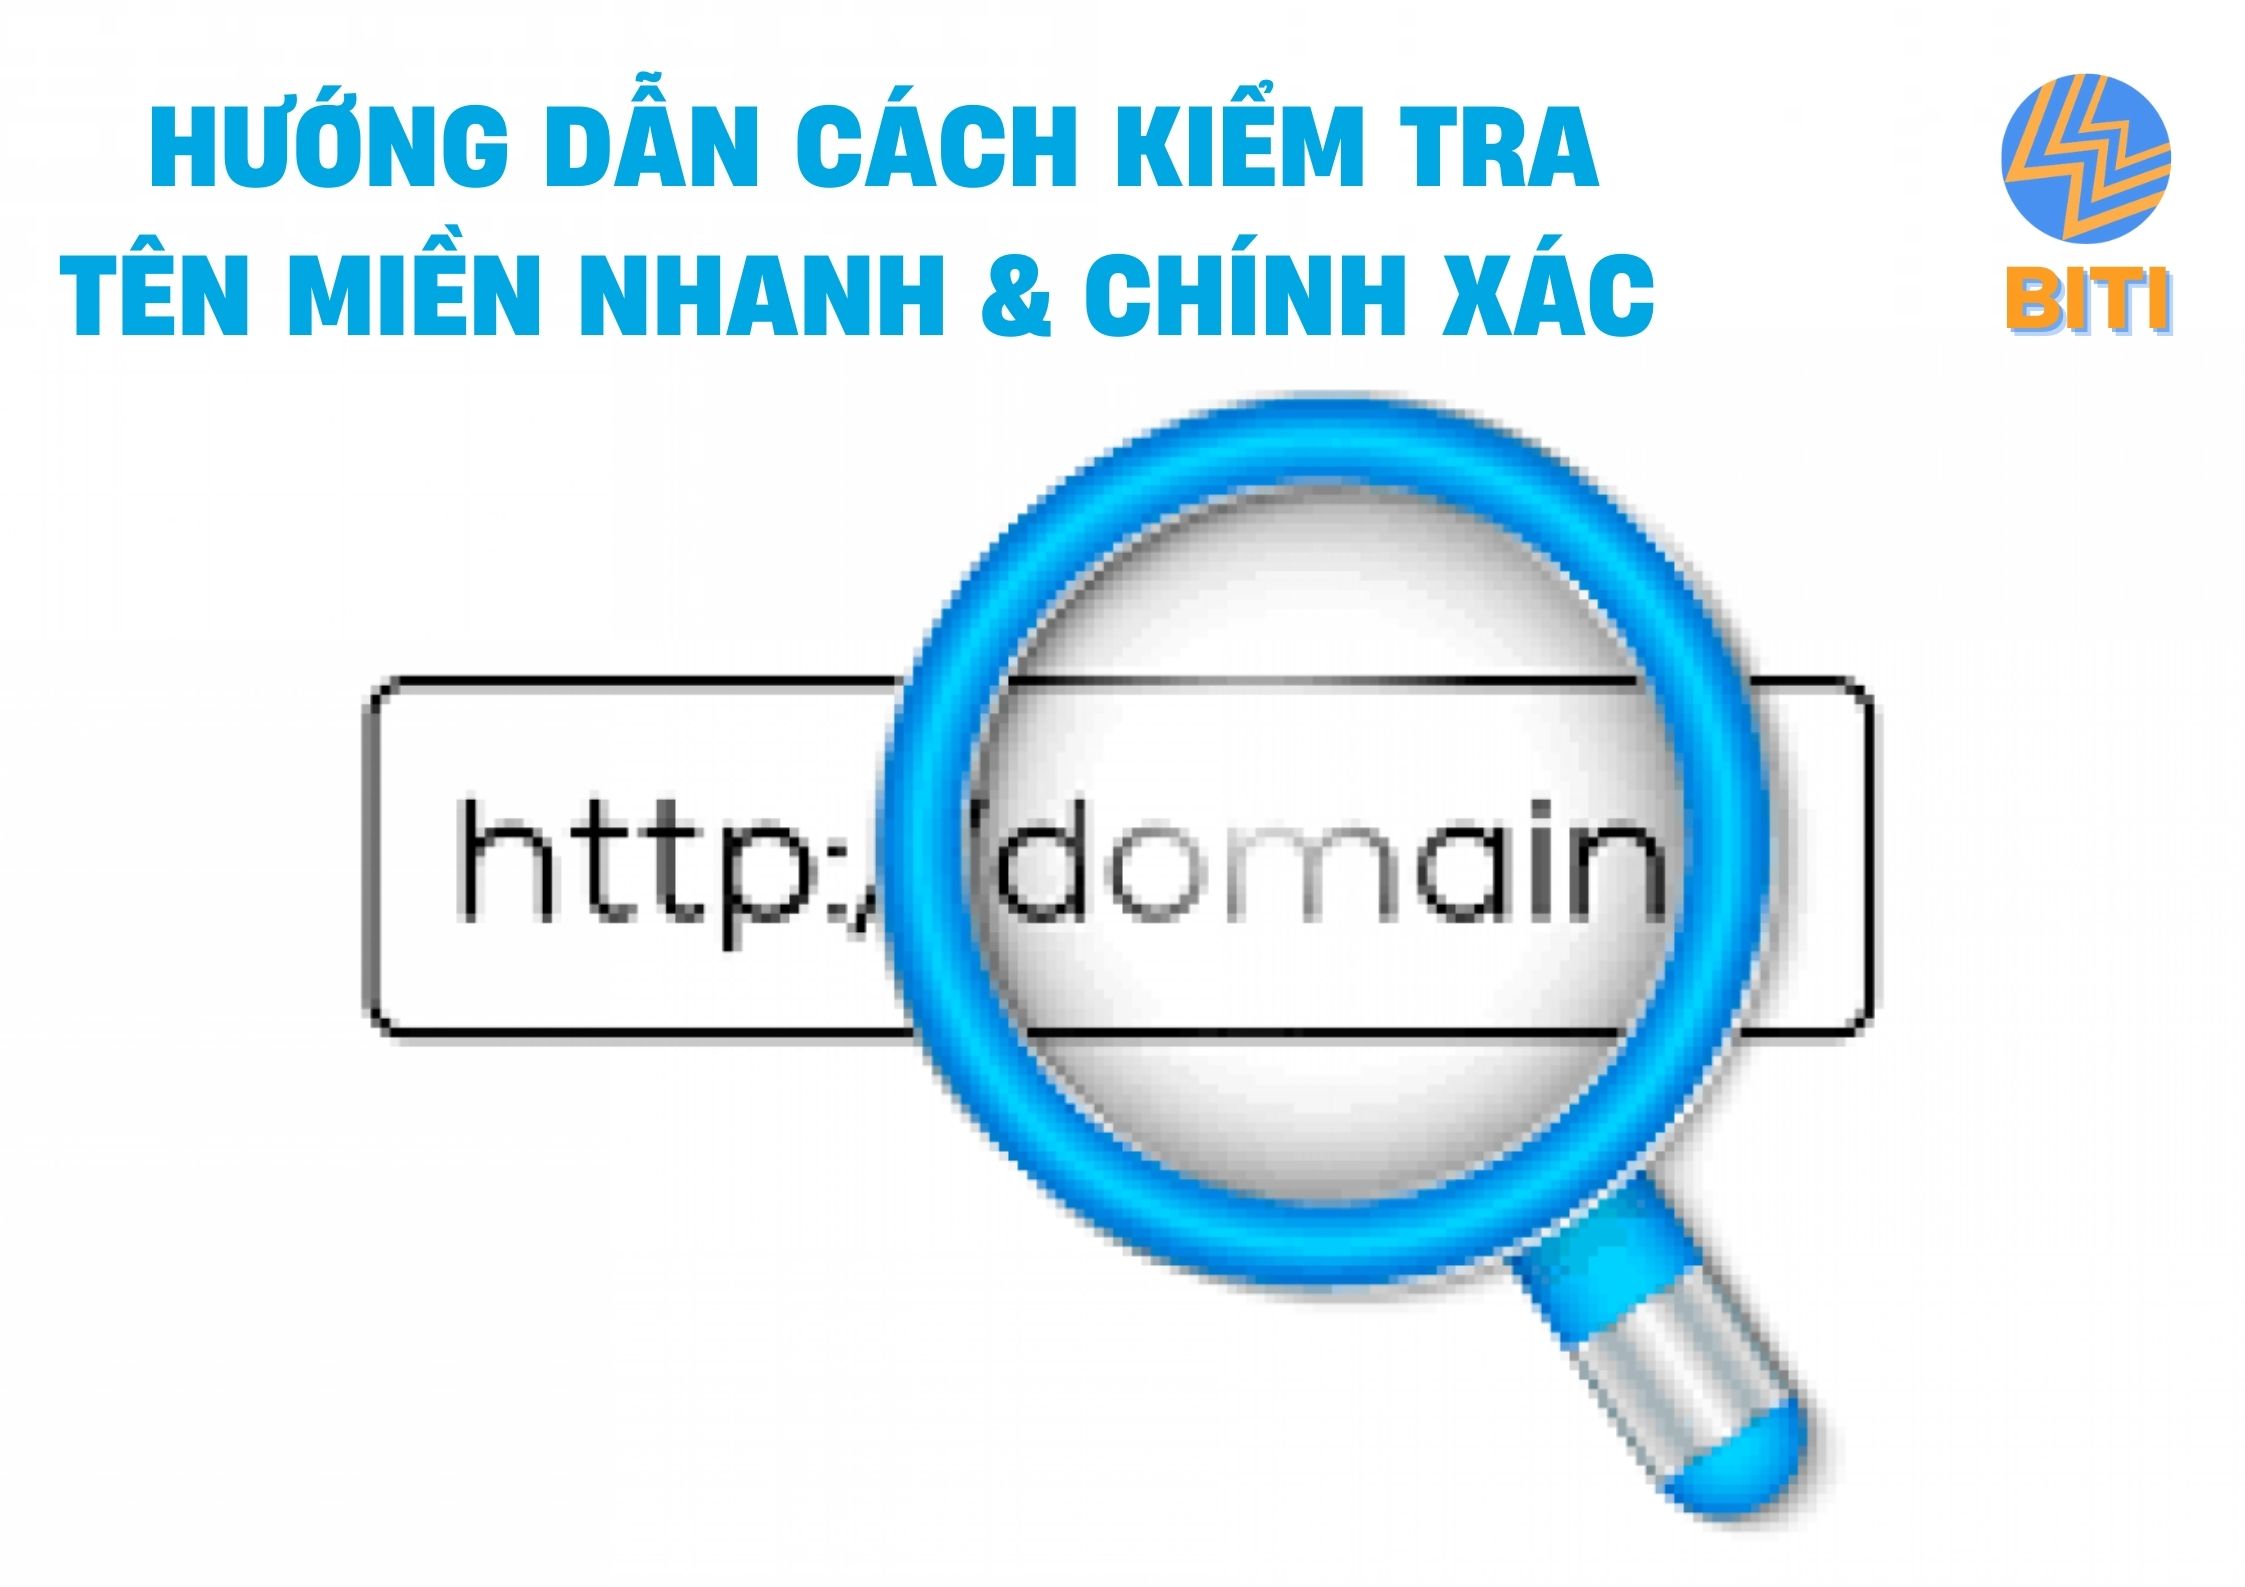 Cách kiểm tra tên miền, check domain nhanh và chuẩn xác nhất